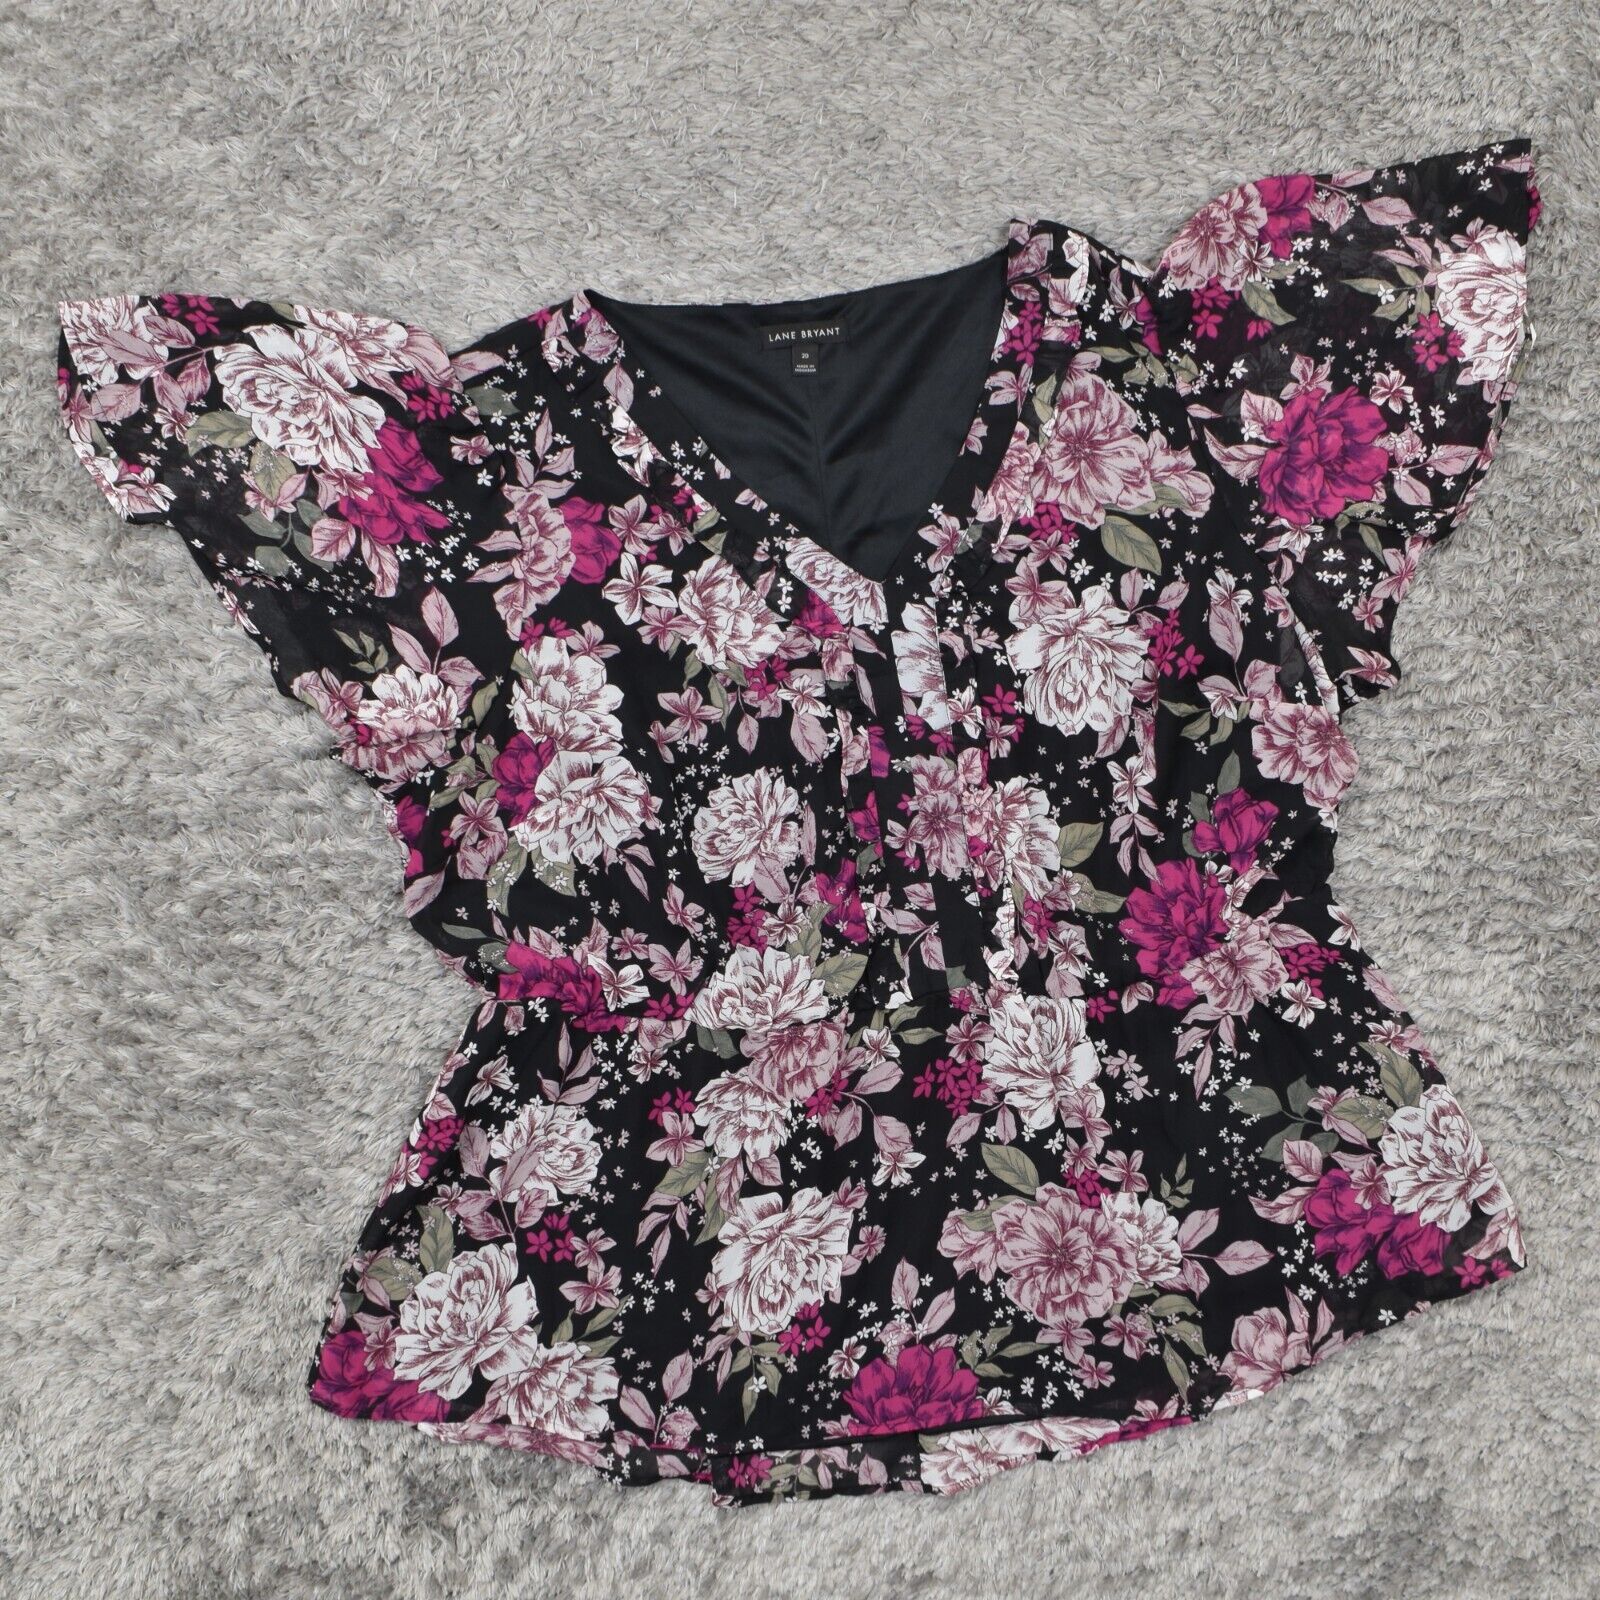 Lane Bryant Women\'s Plus Size 20 Blouse Top Short Sleeve Multicolor Floral Polye